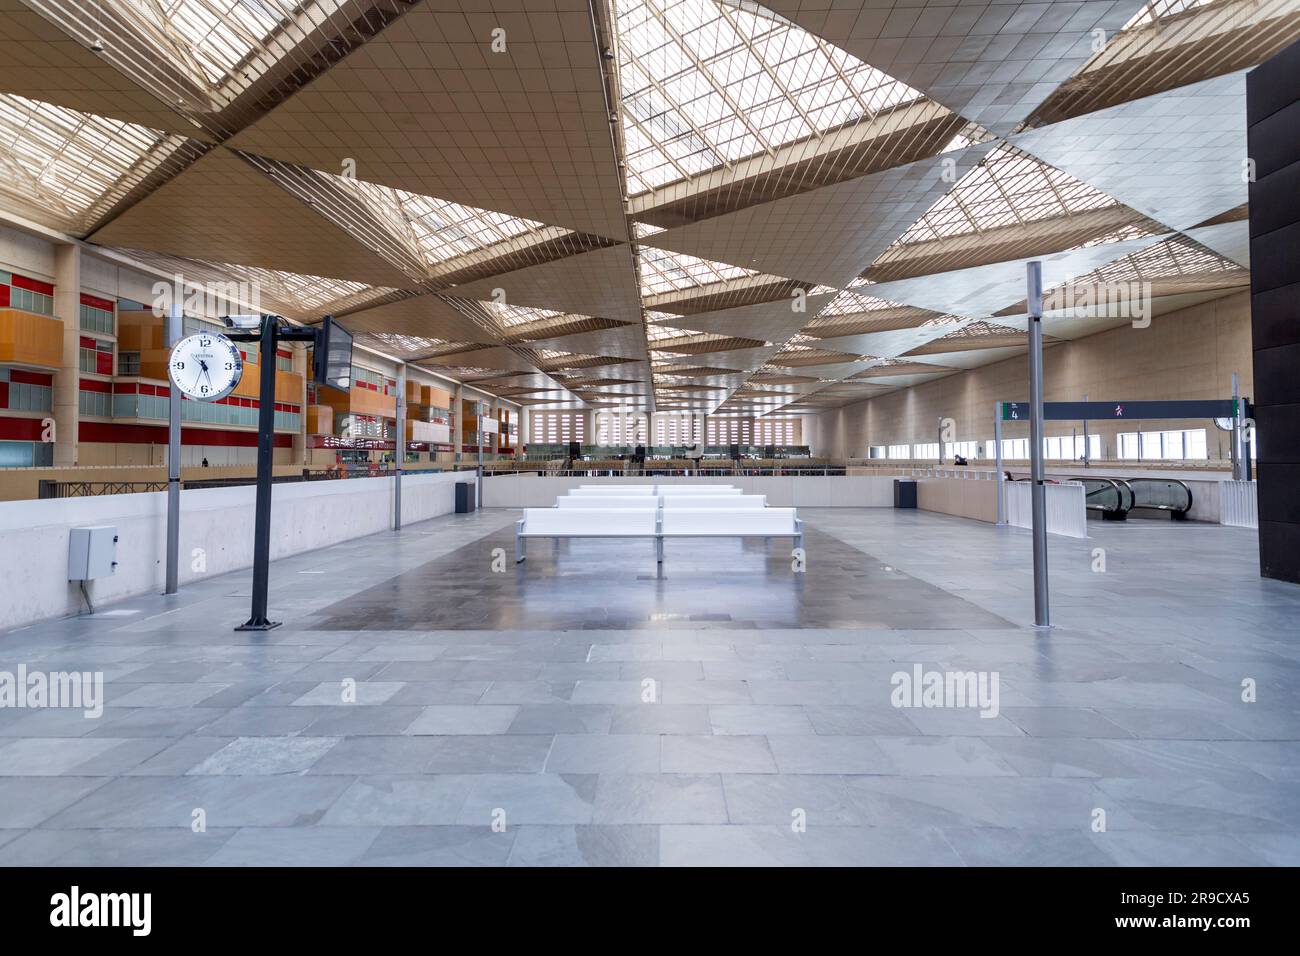 Zaragoza, Spanien - 14. FEBRUAR 2022: Innenseite des Bahnhofs Delicias, dem wichtigsten öffentlichen Verkehrsknotenpunkt der Stadt Saragoza, Aragon, Spanien. Stockfoto